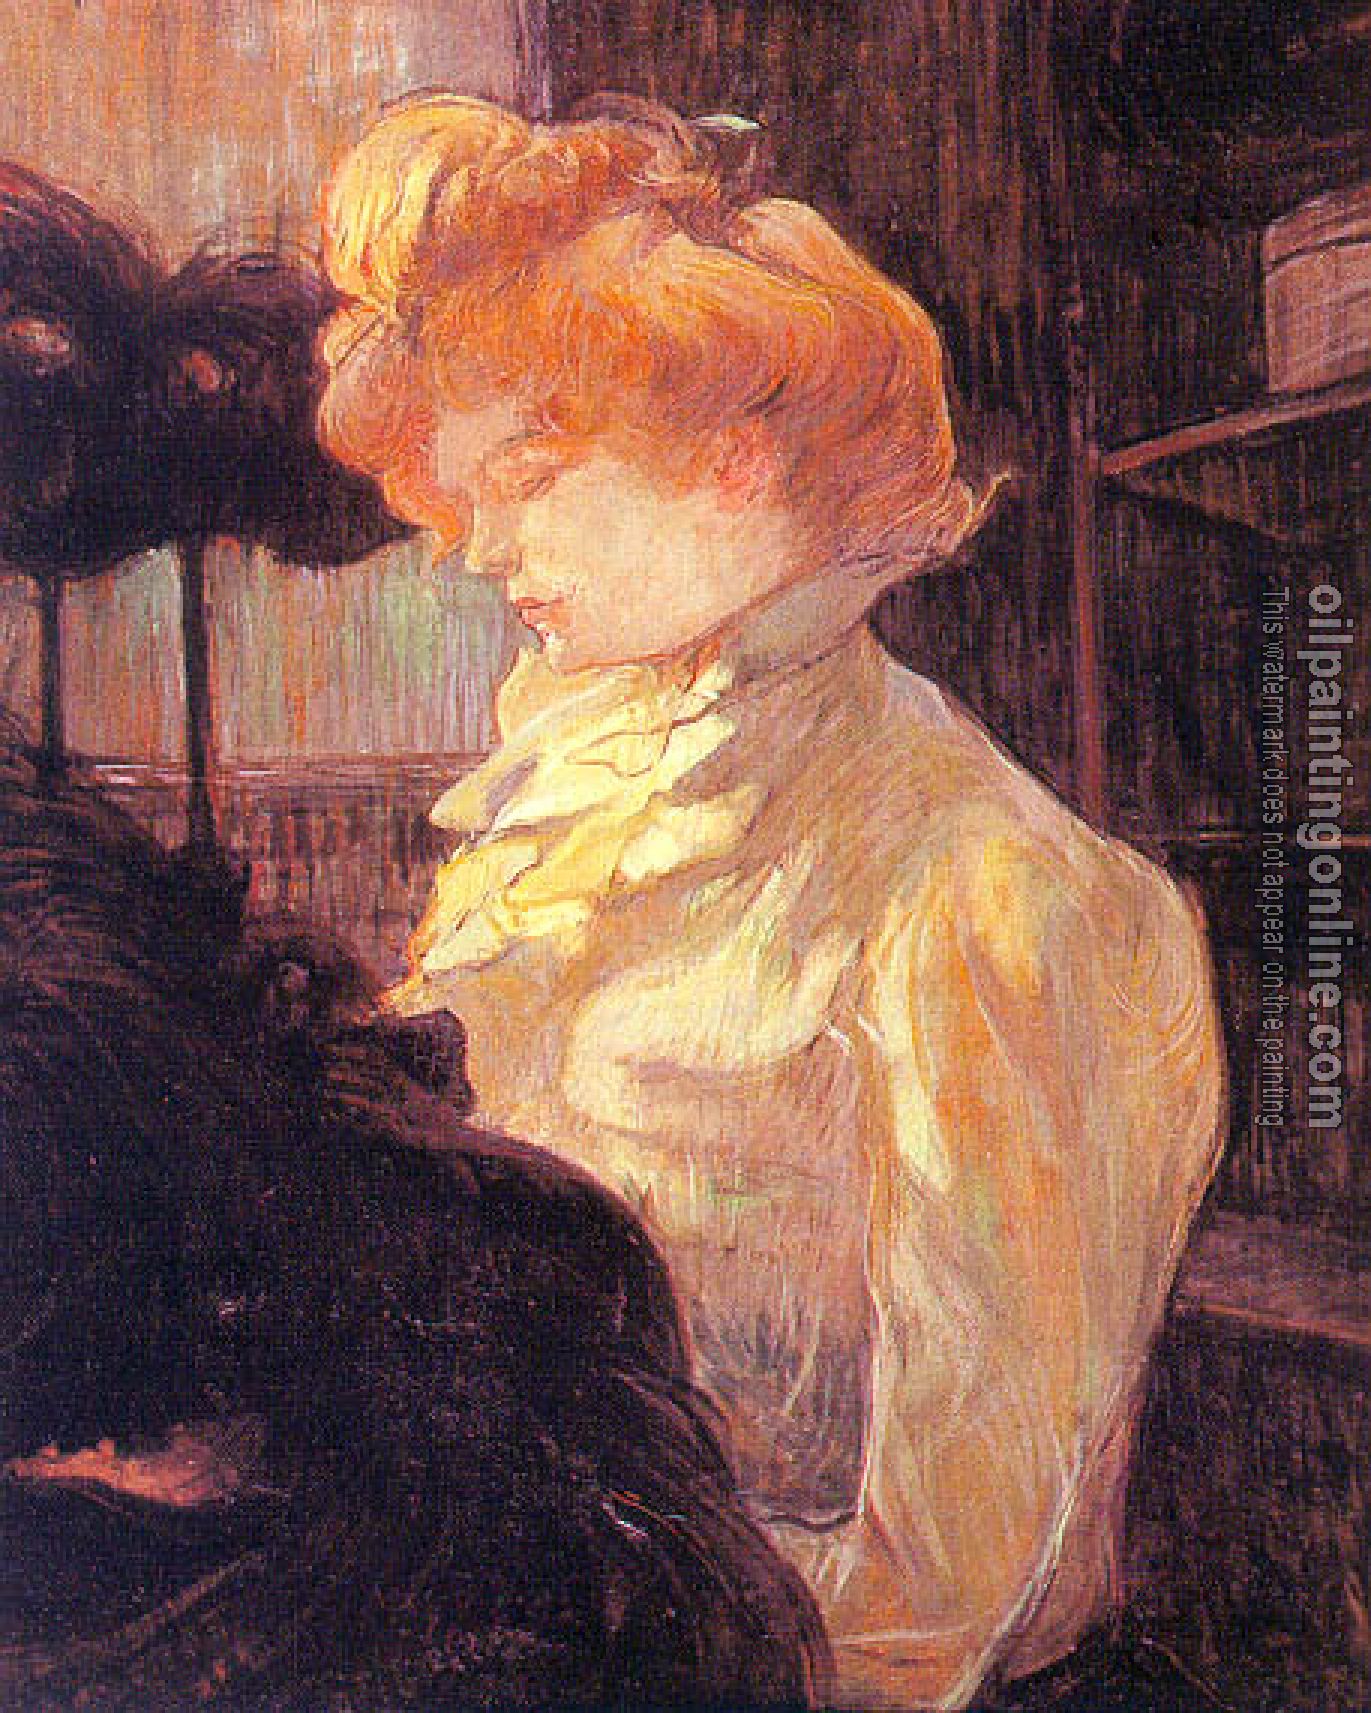 Toulouse-Lautrec, Henri de - The Milliner